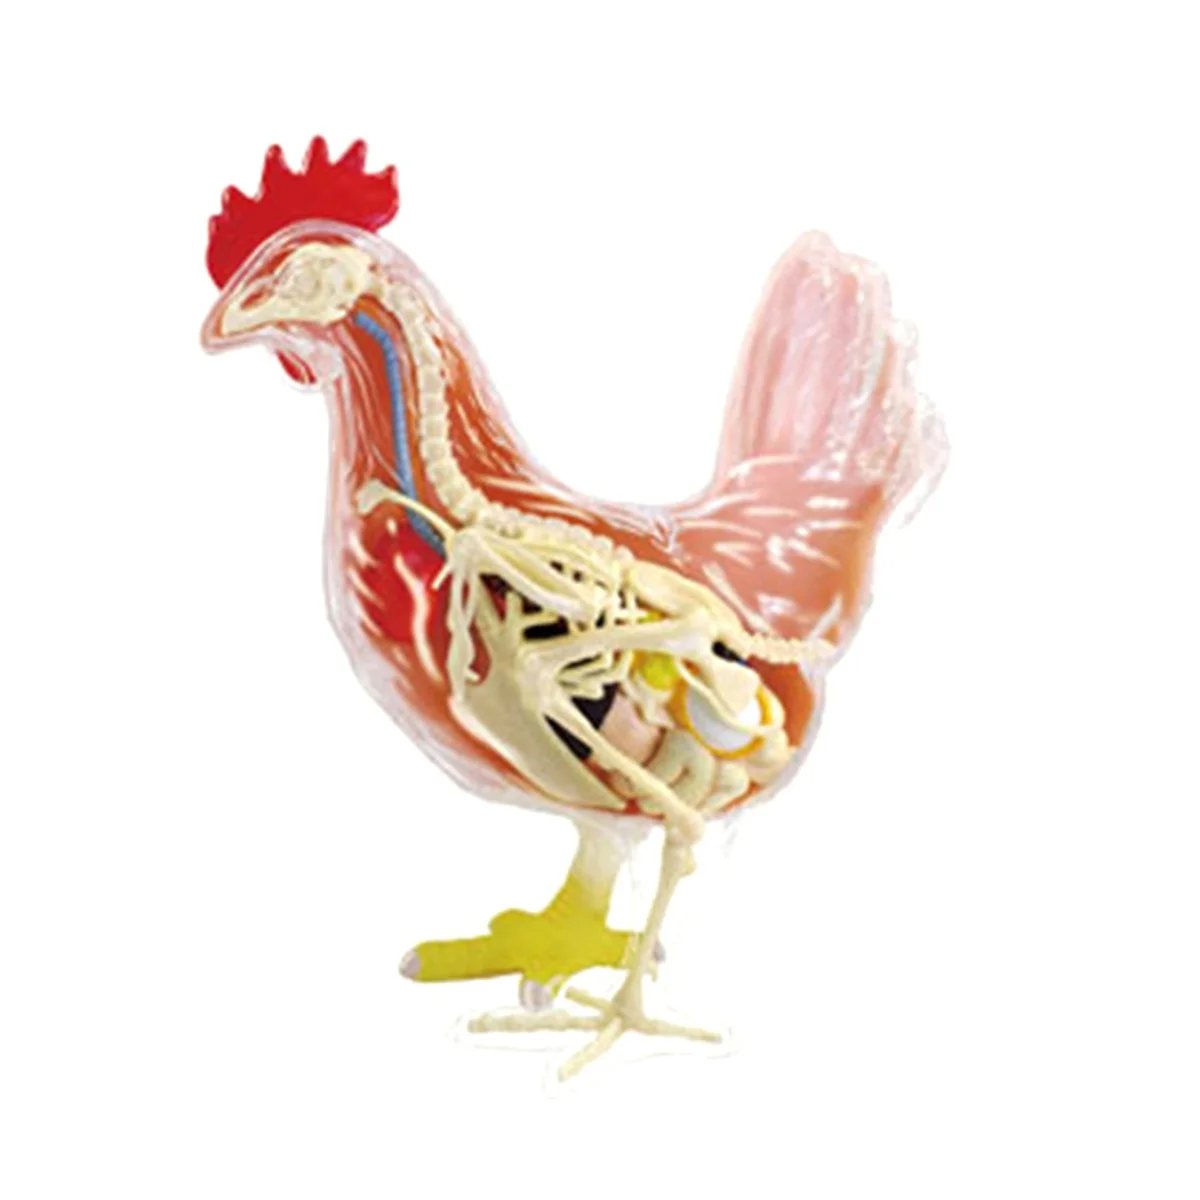 Кура 4 6. Анатомия курицы. Скелет петуха. Скелет курицы. Курочка анатомия.